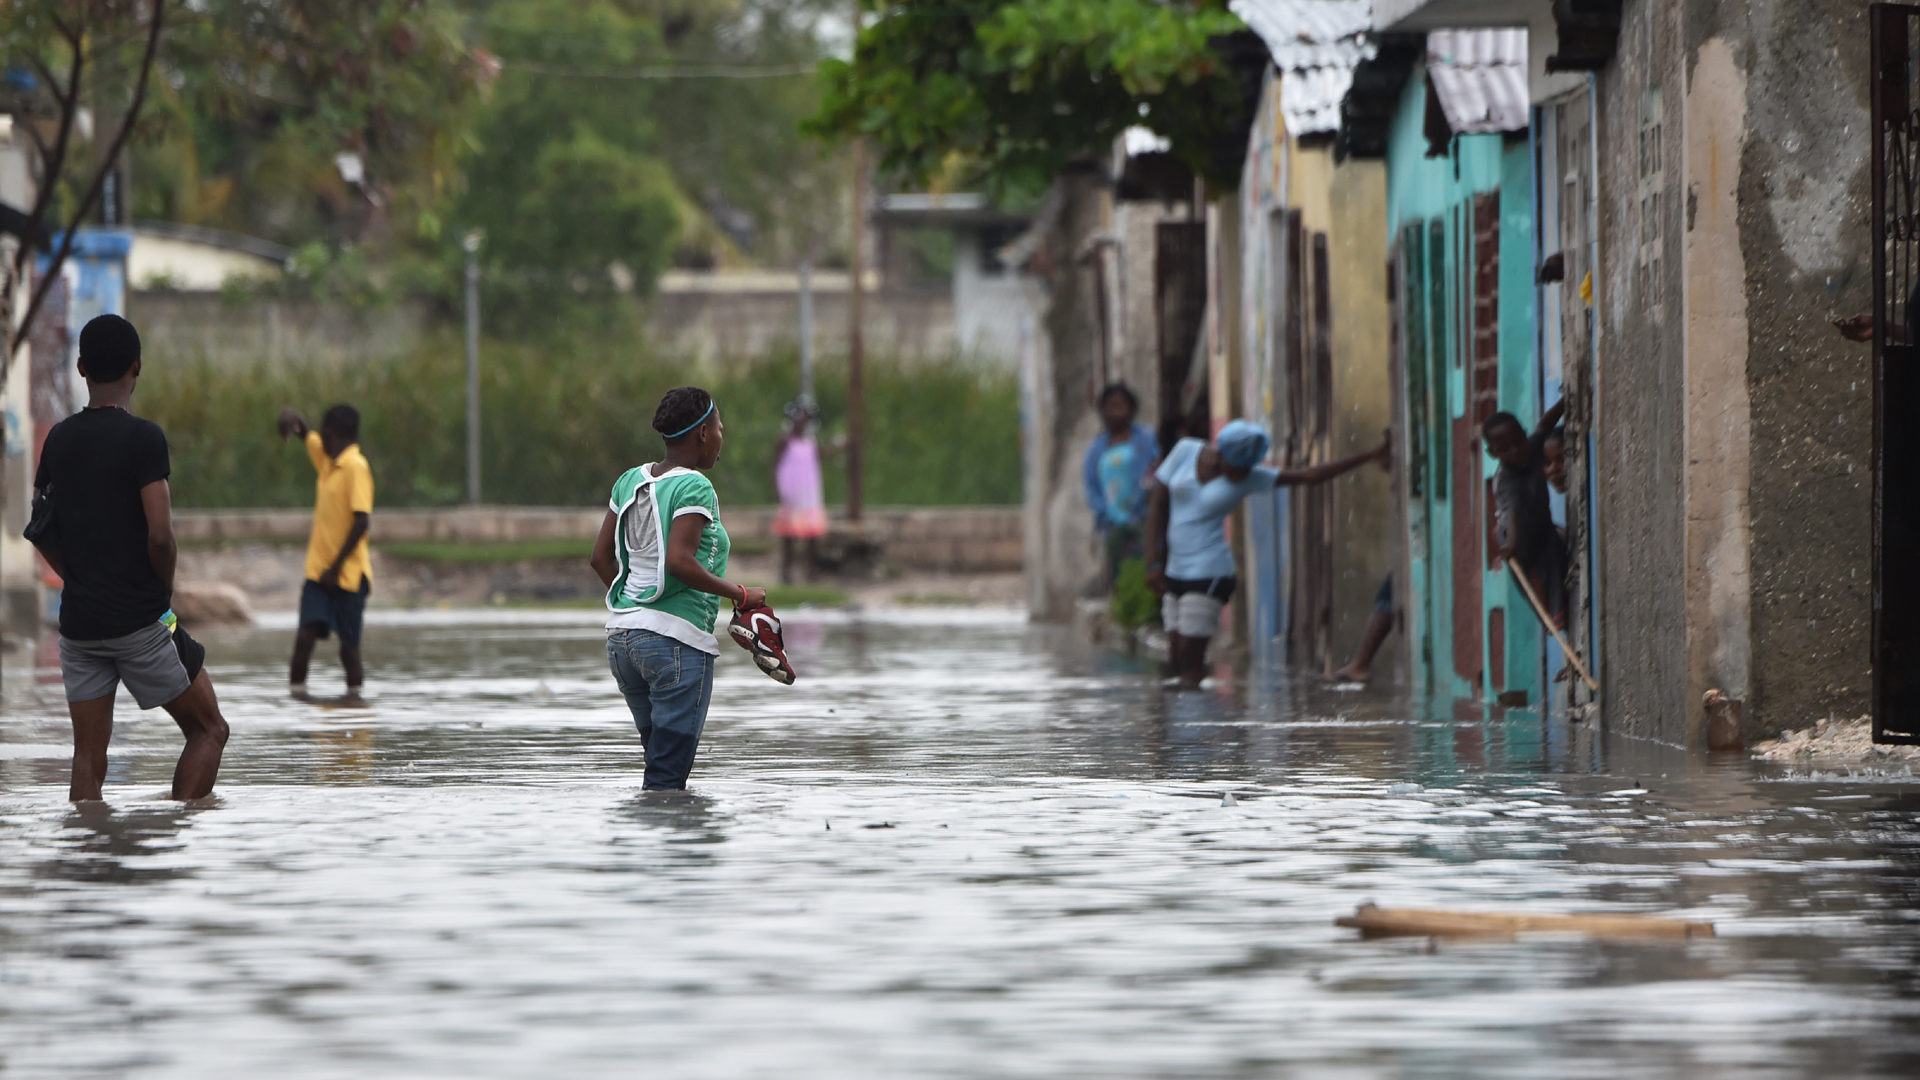 Armut, Naturkatastrophen, Kriminalität - Haiti gehört zu den ärmsten Ländern der Welt.